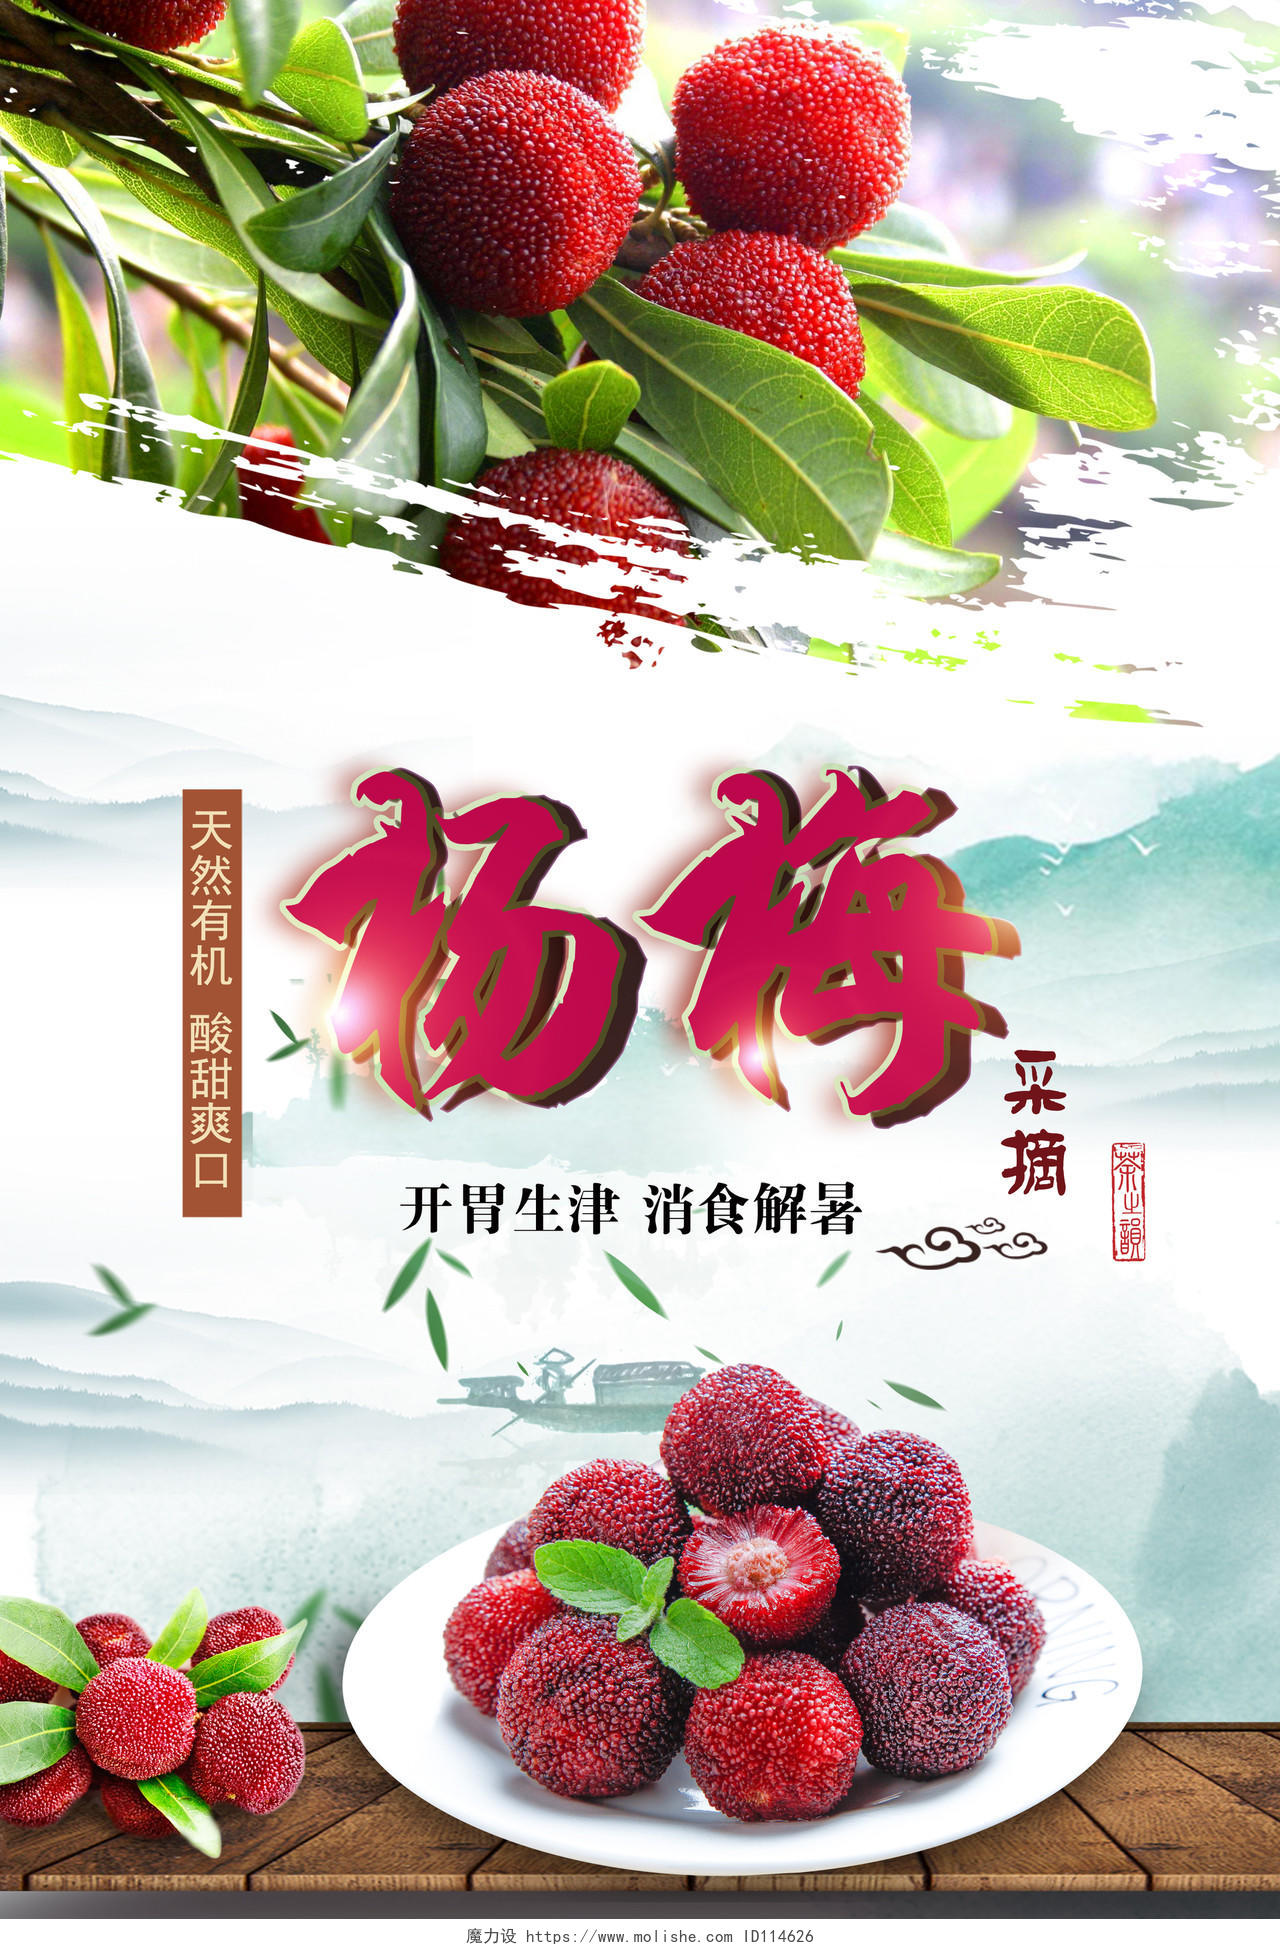 水墨杨梅采摘天然有机酸甜爽口水果宣传海报